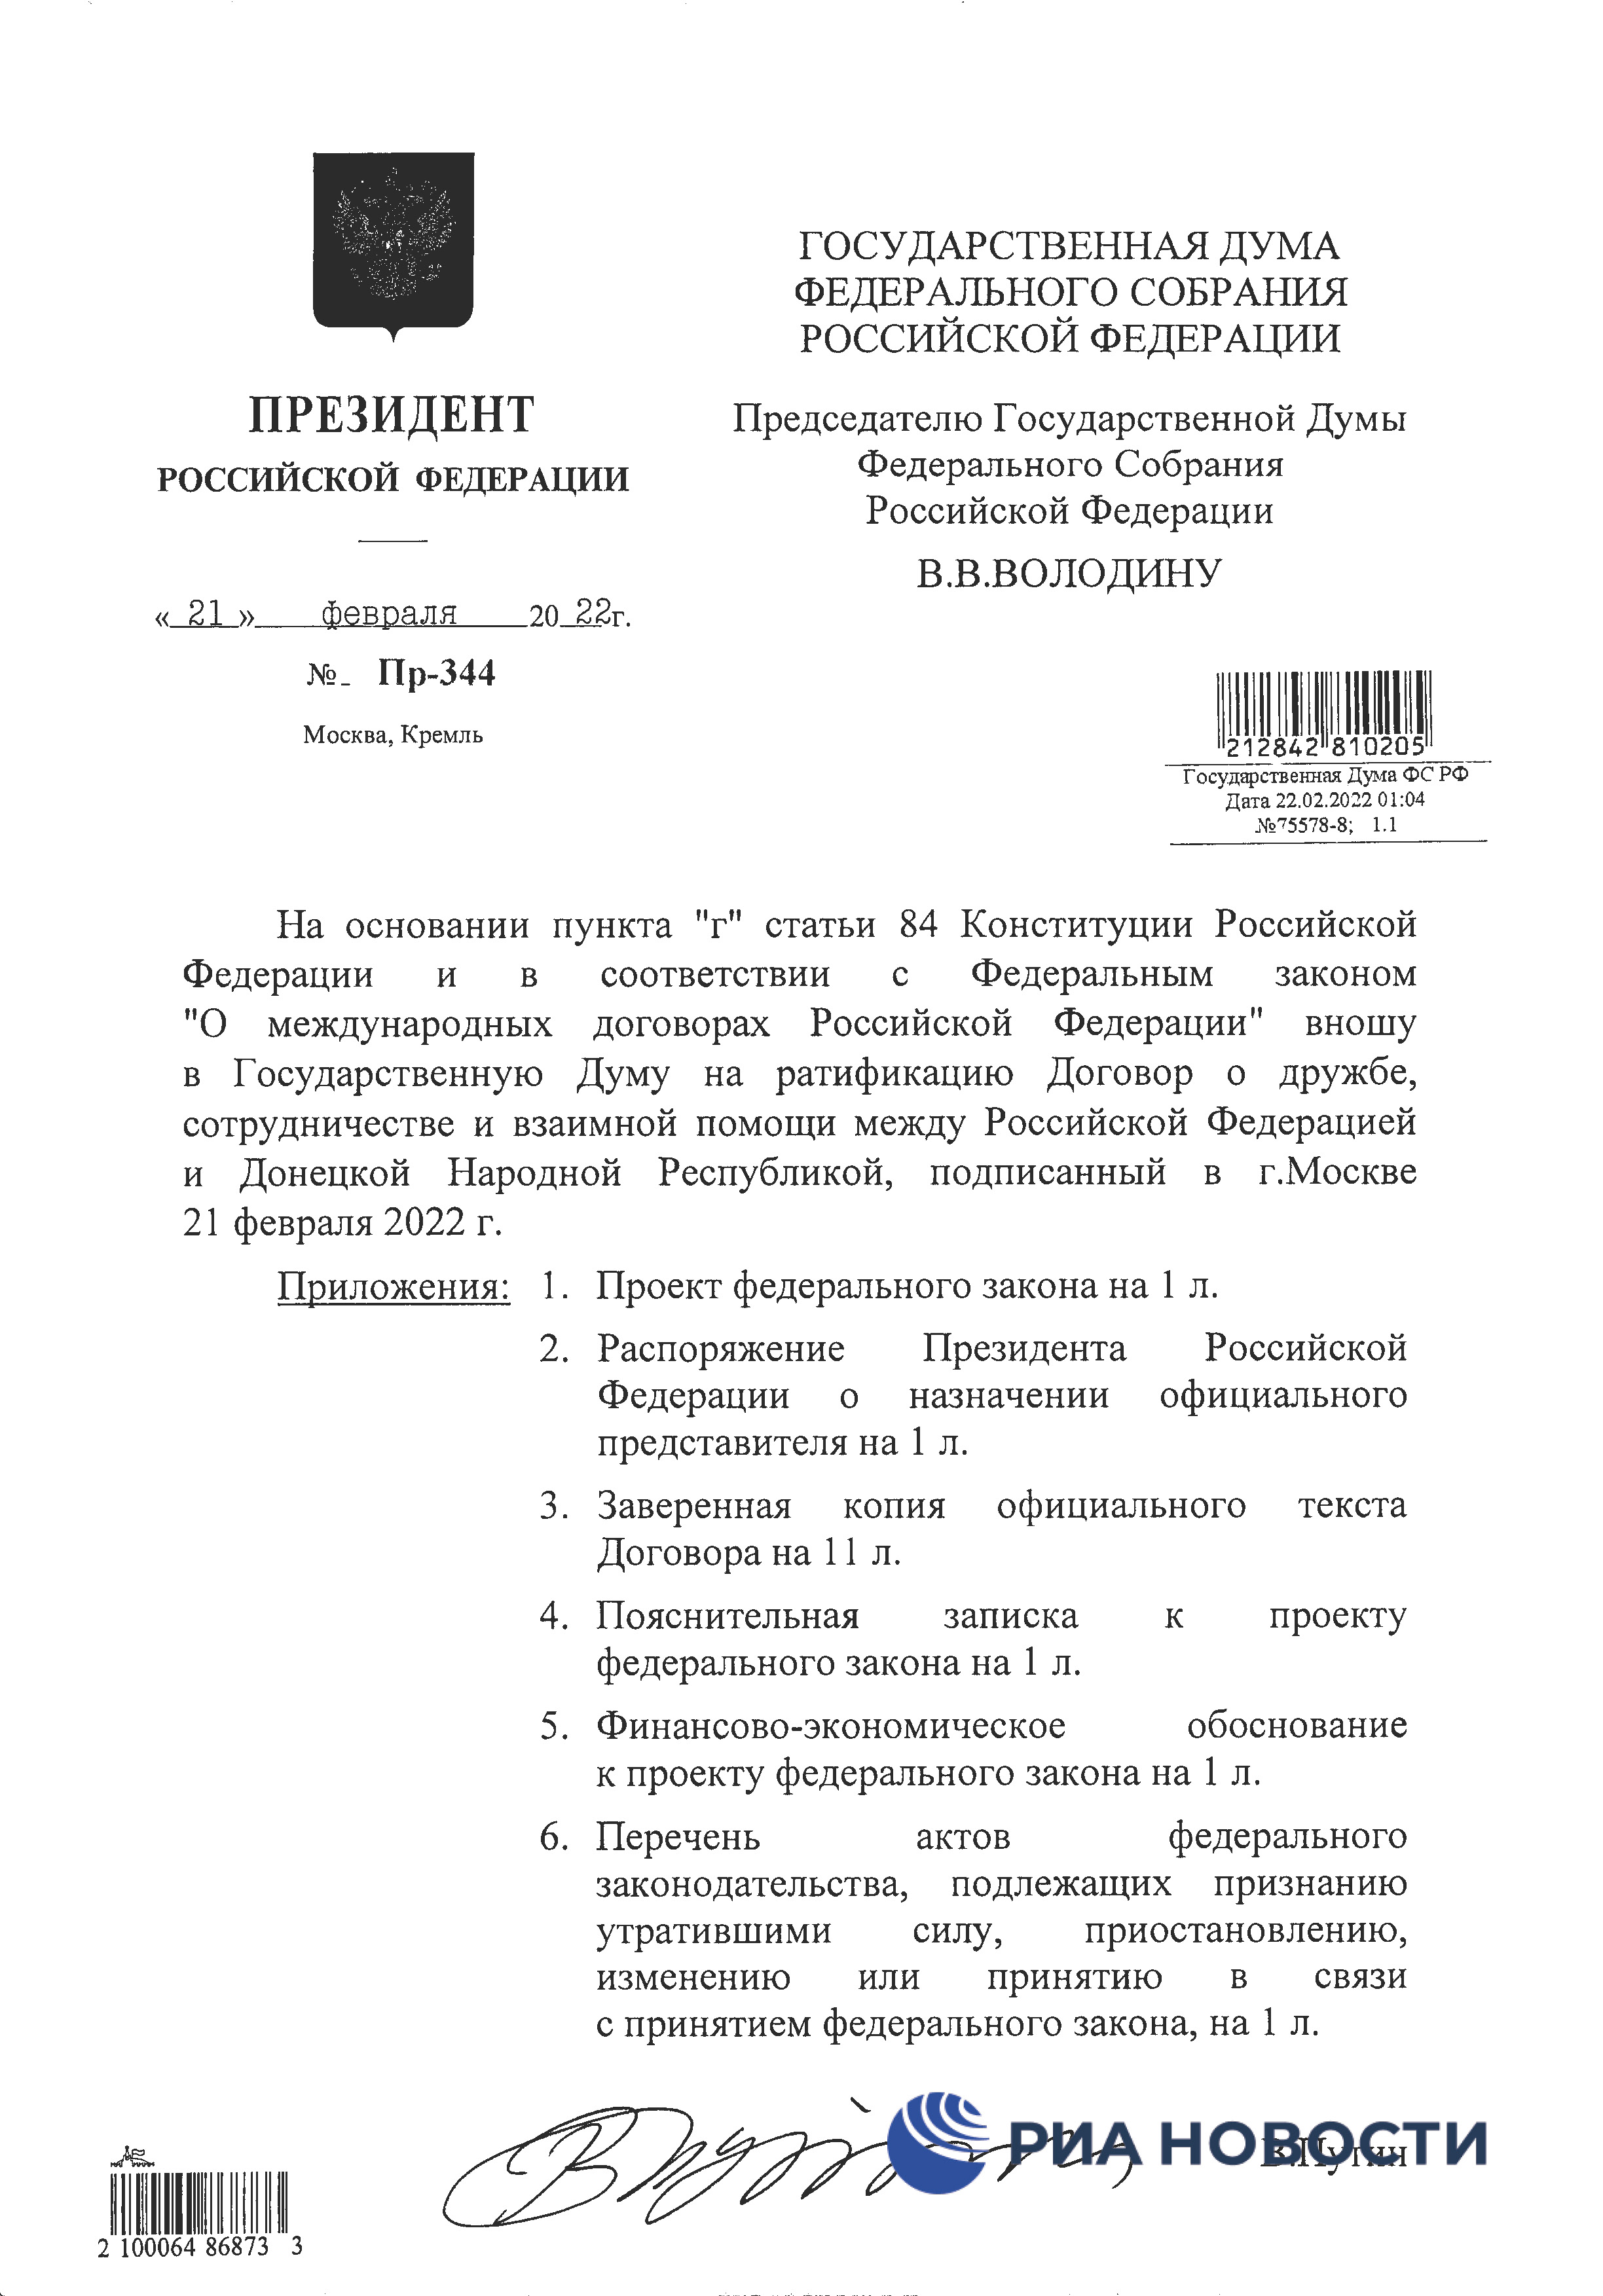 Договор о дружбе России с ДНР и ЛНР - страница 1